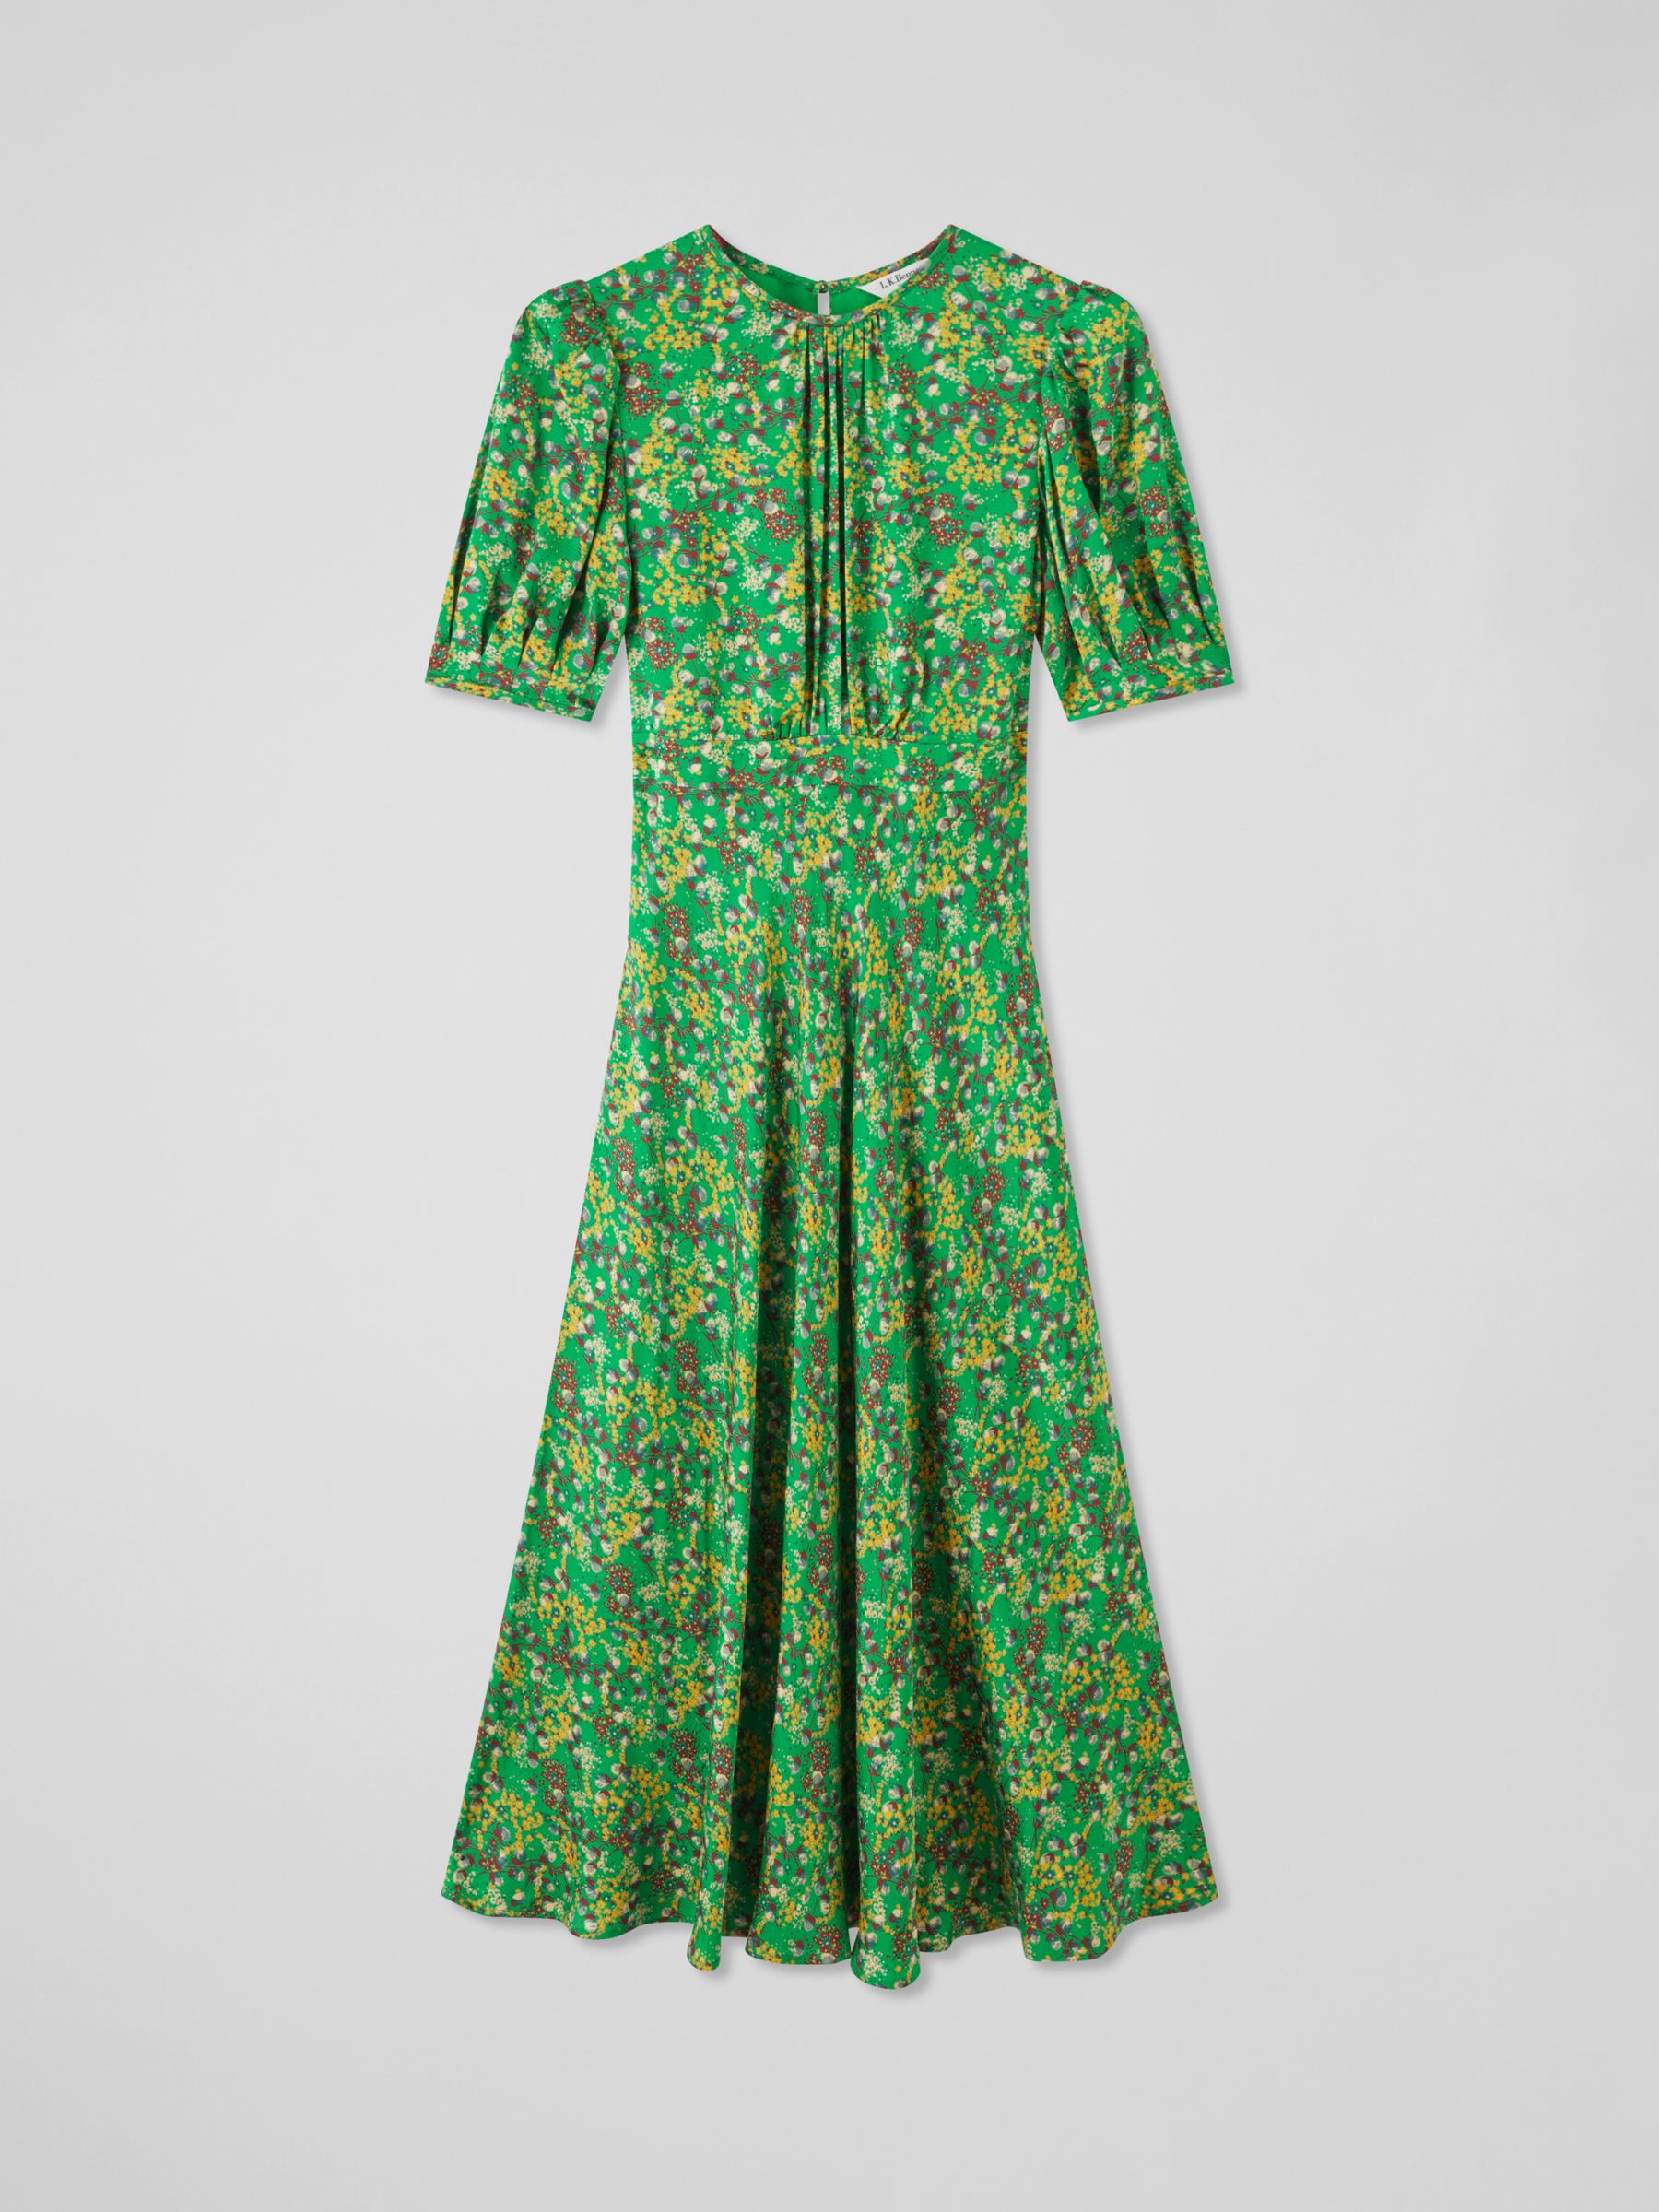 L.K.Bennett Luna Floral Print Satin Midi Dress, Green/Multi, 10